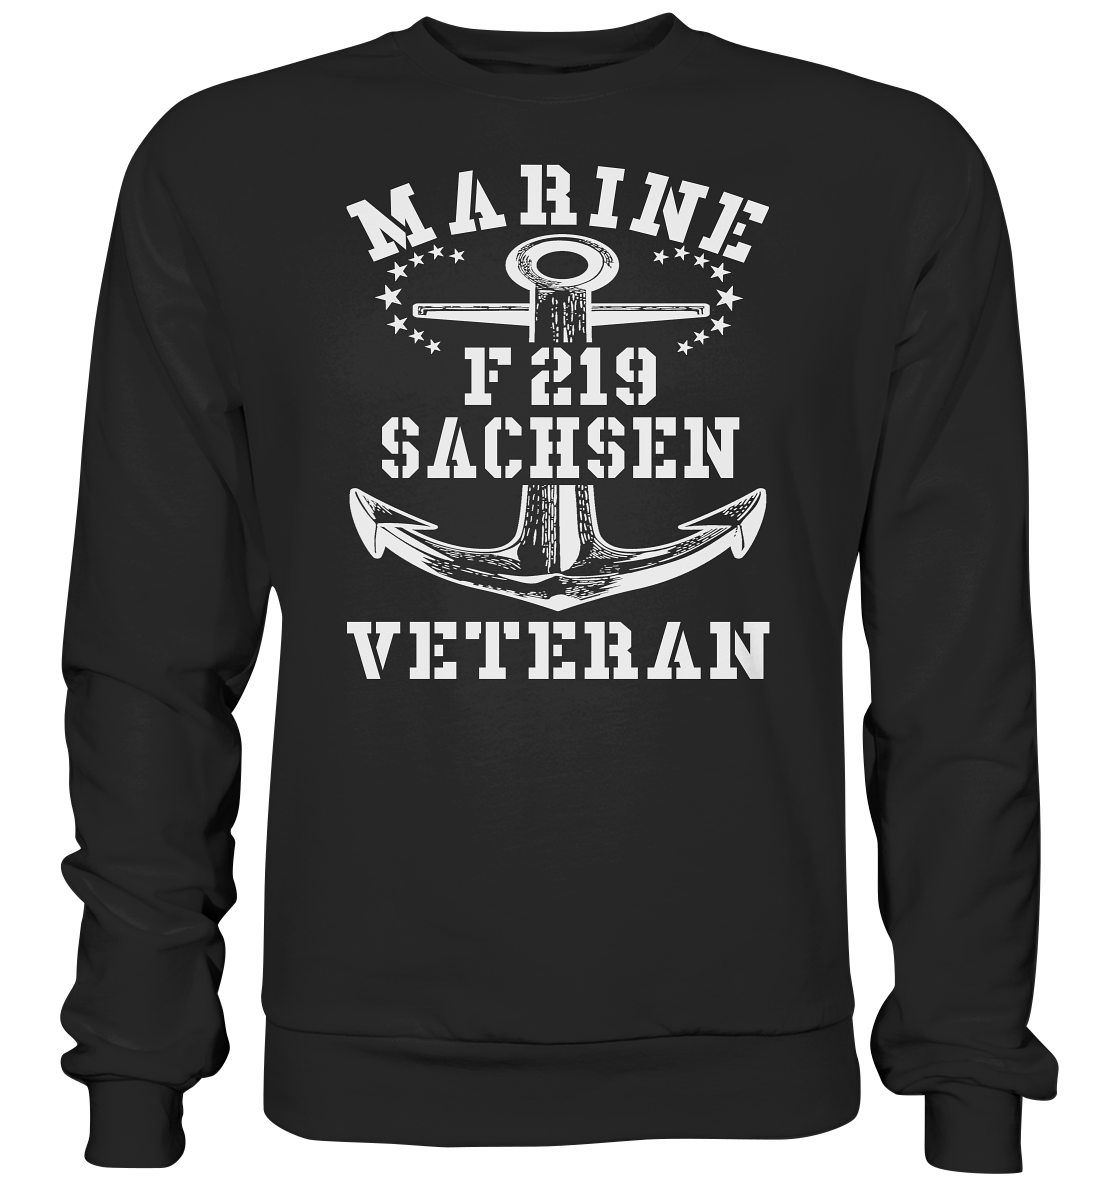 Fregatte F219 SACHSEN Marine Veteran - Premium Sweatshirt